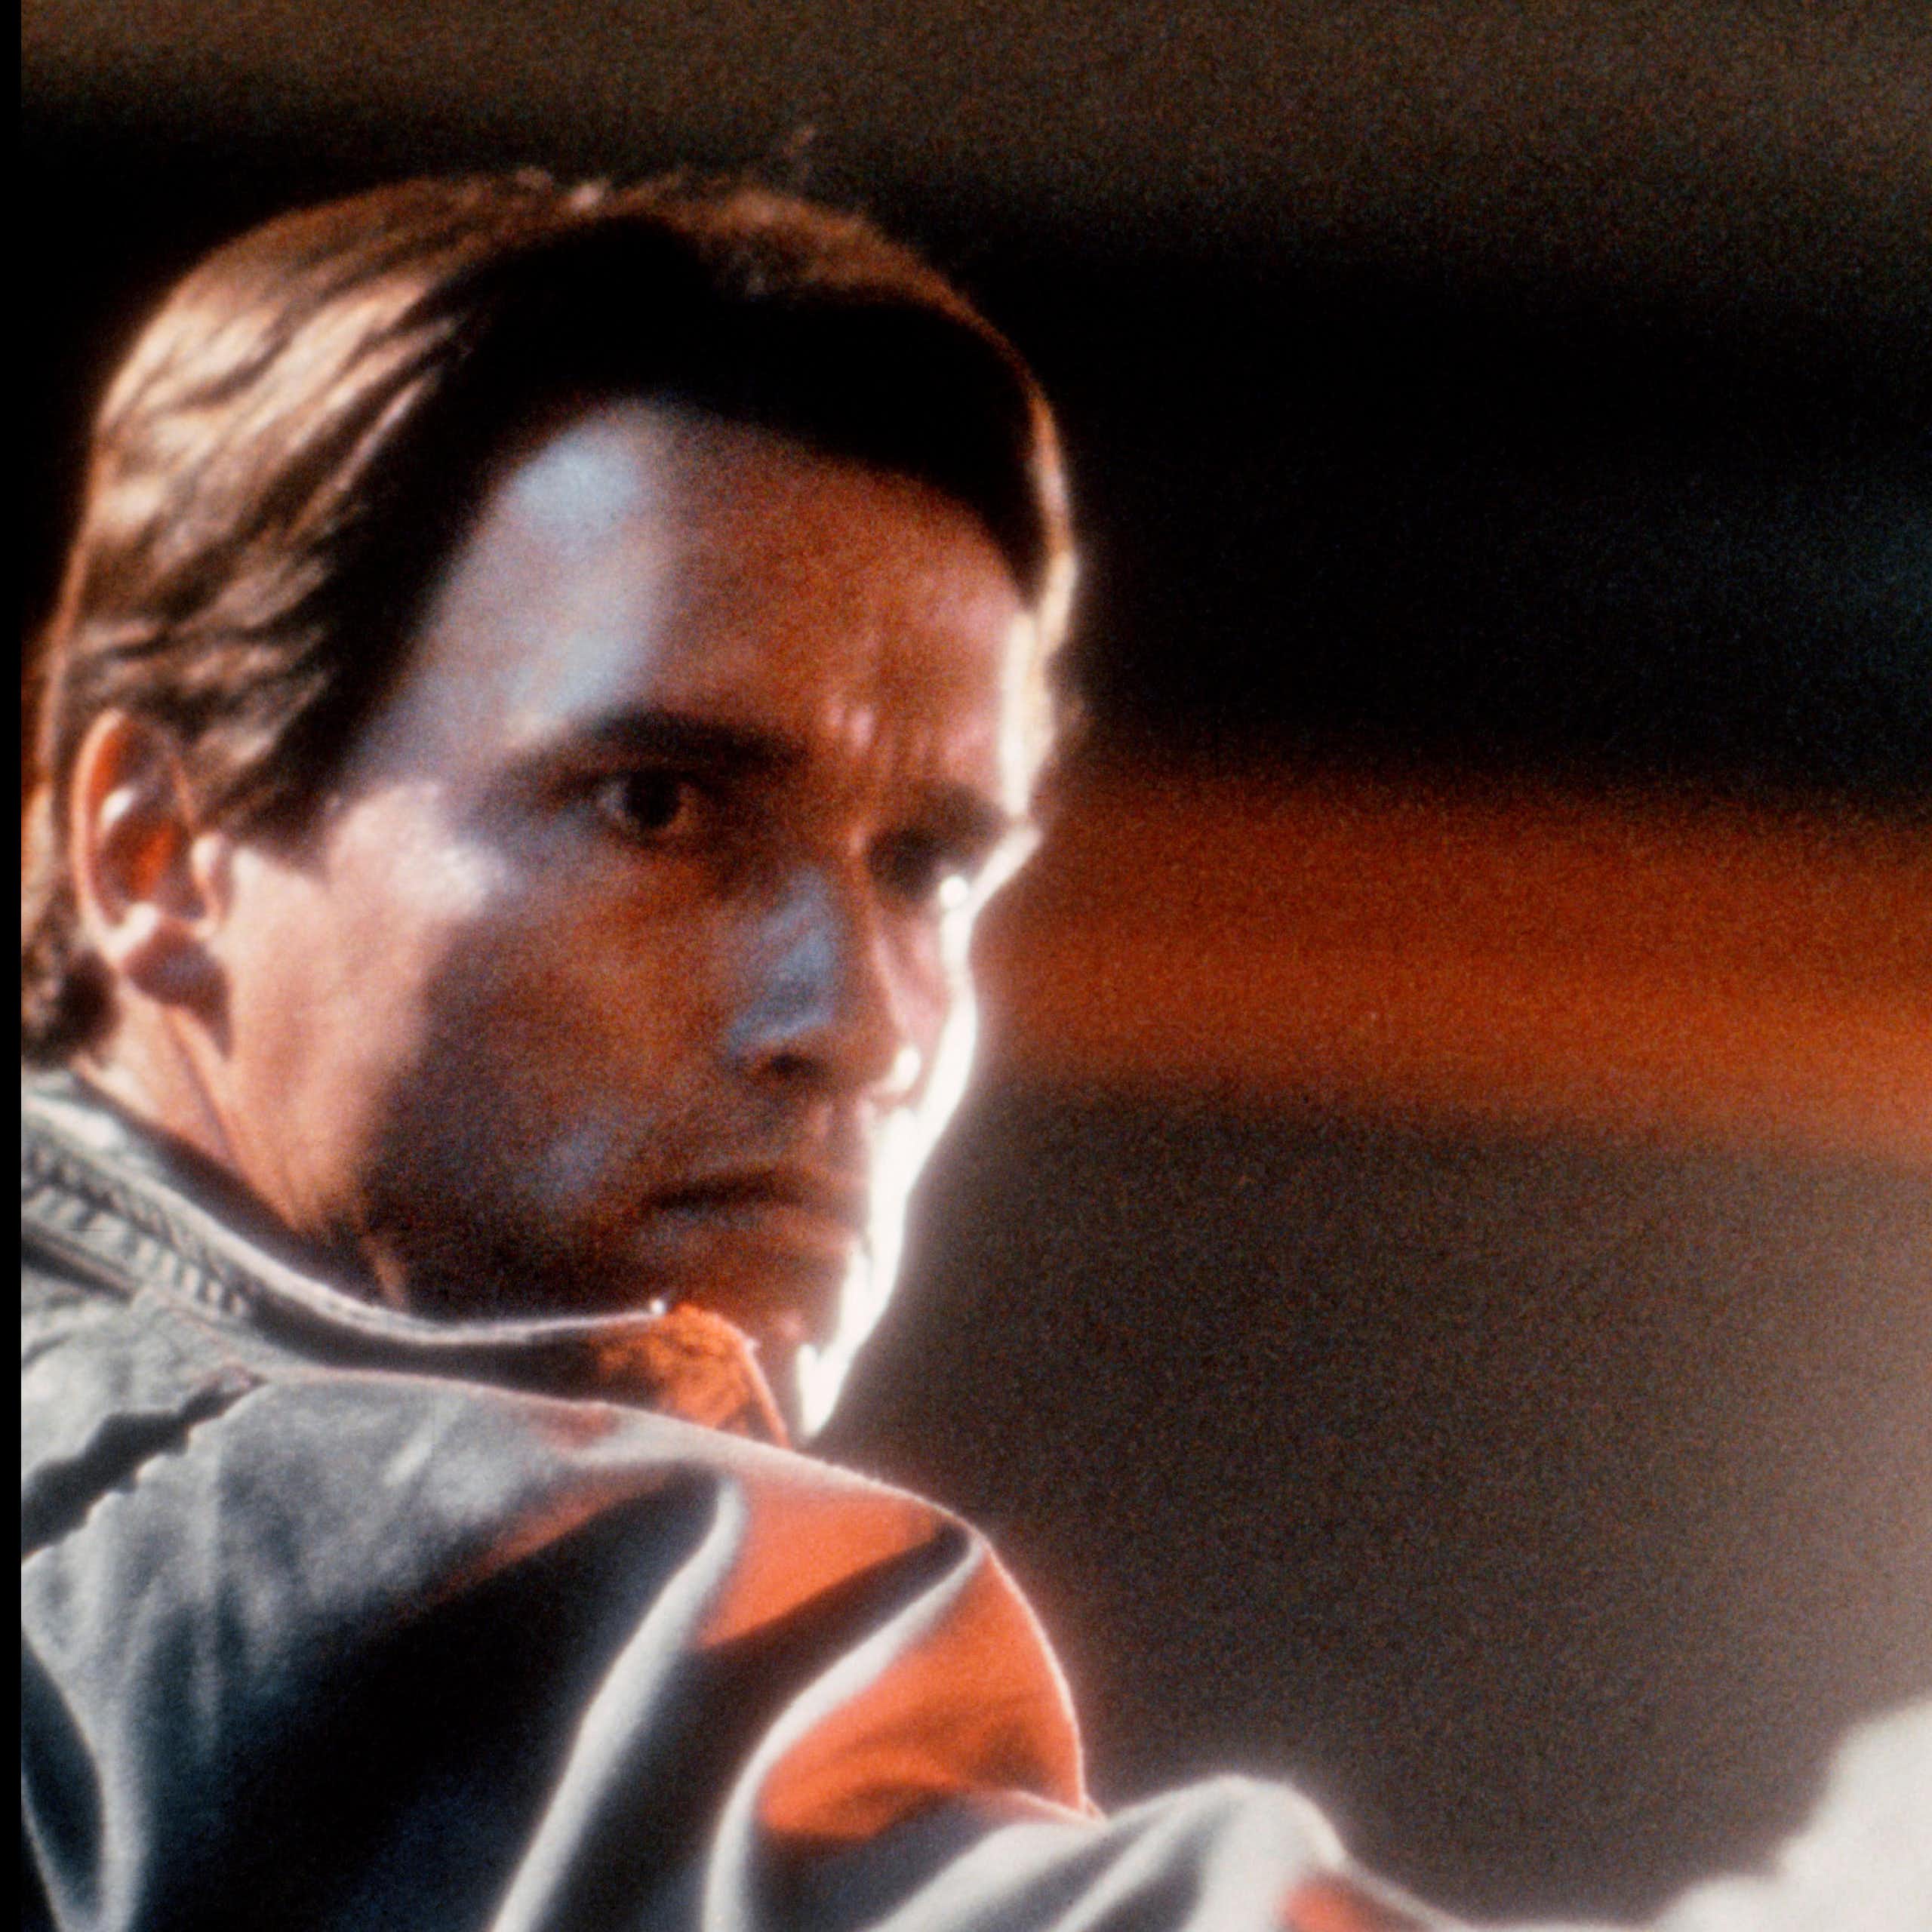 Arnold Schwarzenegger in The Terminator holding a gun